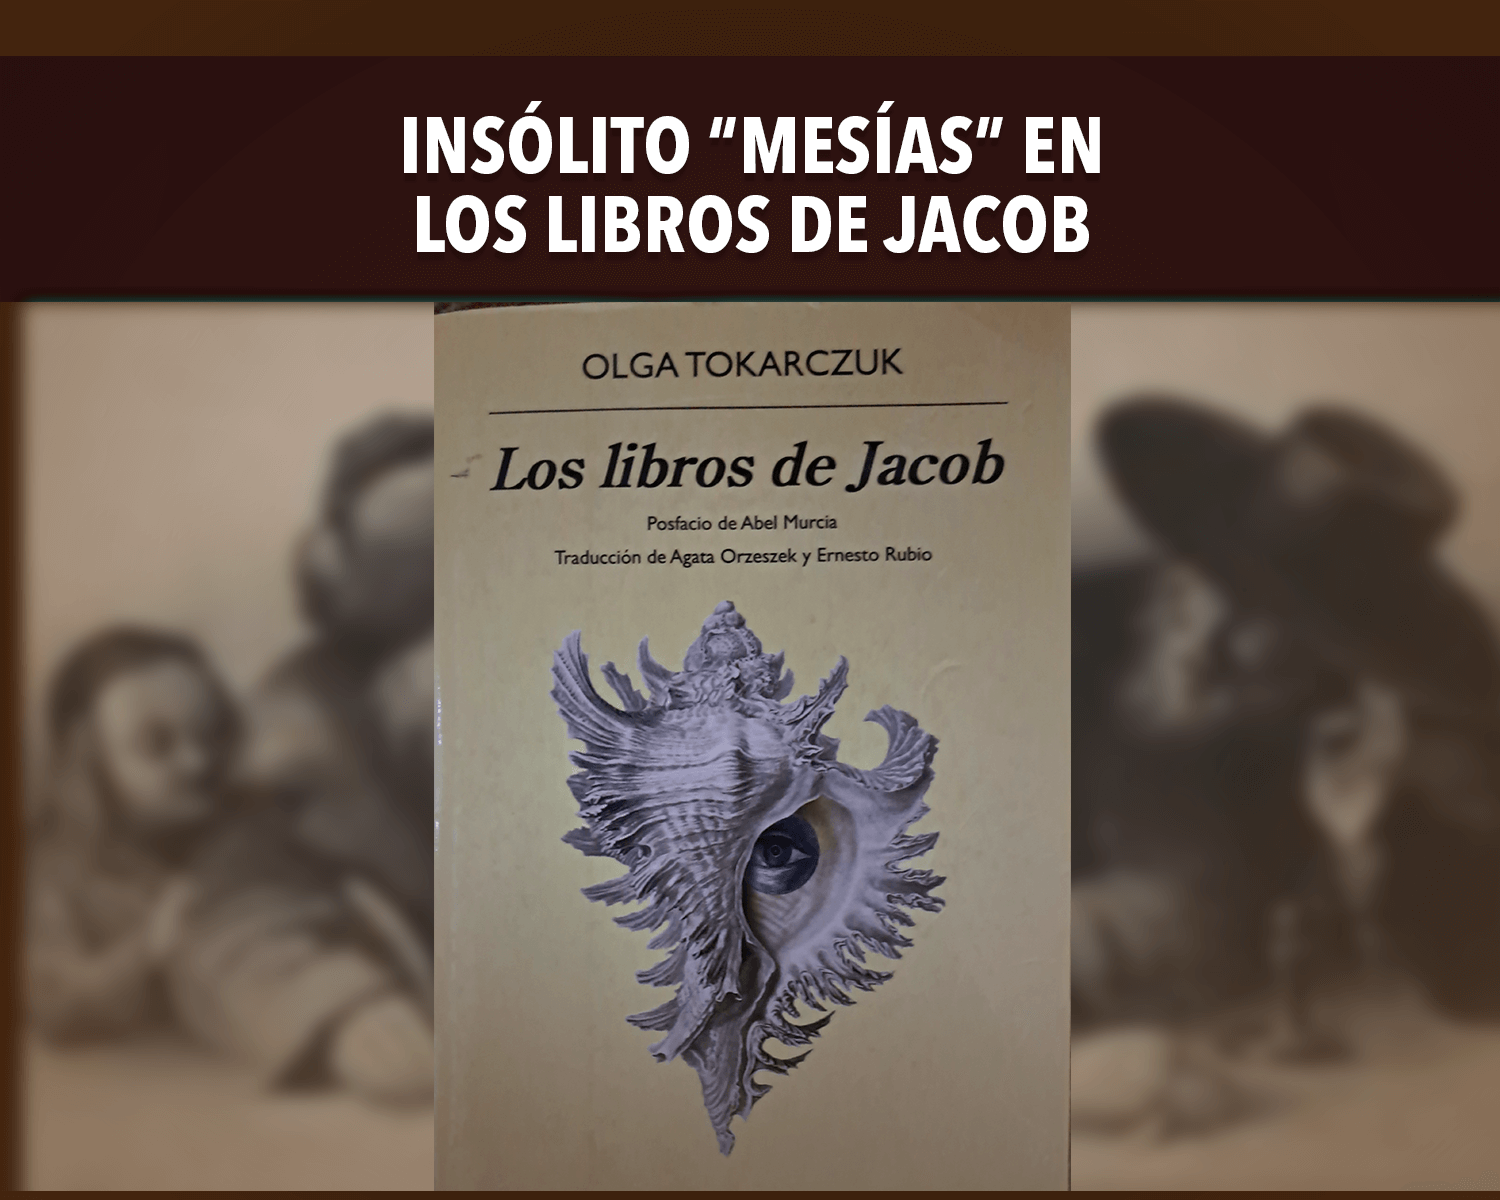 Insólito “Mesías” en Los libros de Jacob